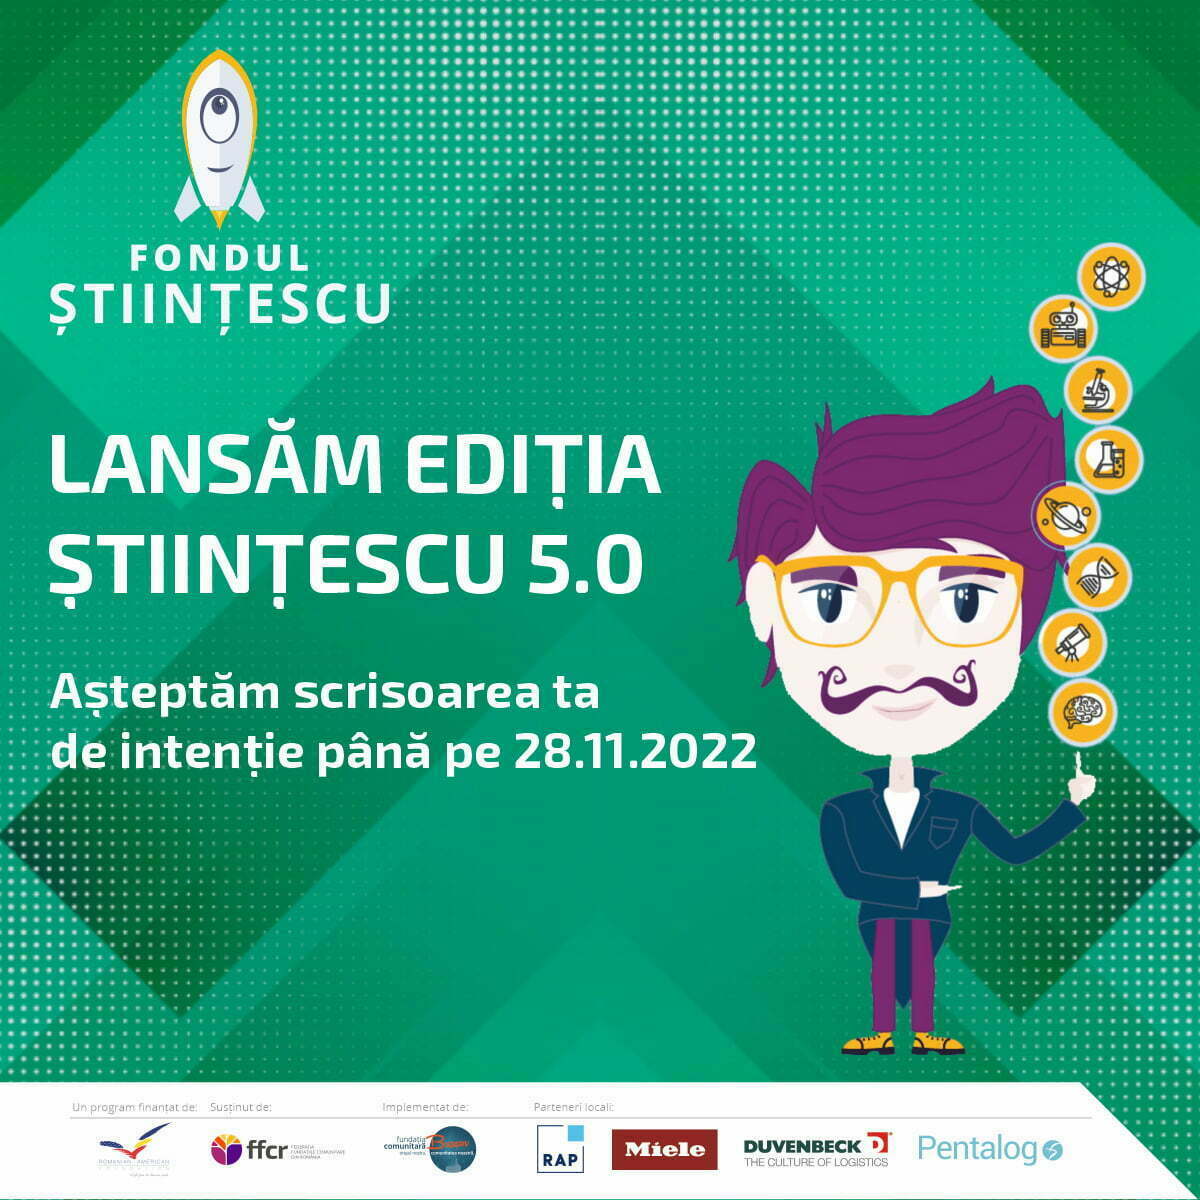 Apel de proiecte în cadrul ediției Științescu 5.0 la Brașov cu o finanțare totală de 109.292 lei pentru 5-7 proiecte din domeniul educației STEAM